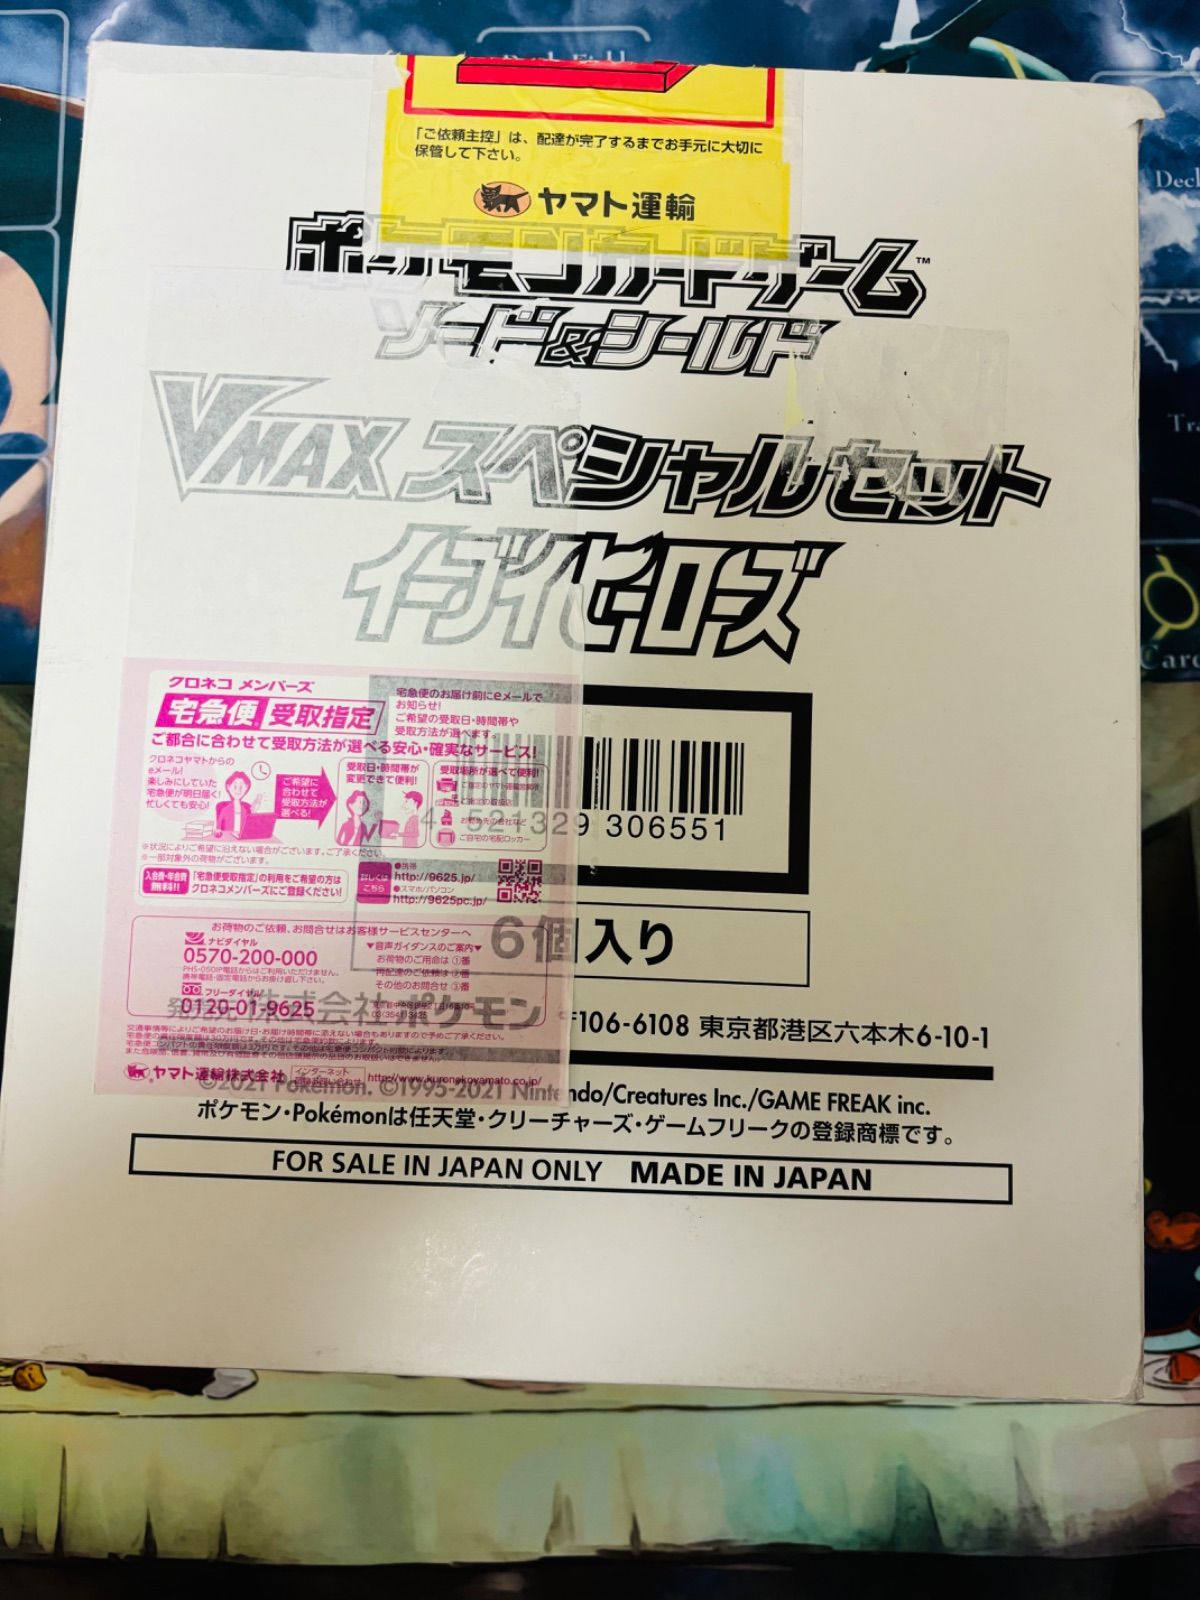 イーブイヒーローズ vmaxスペシャルセット カートン6個入り | www.150 ...